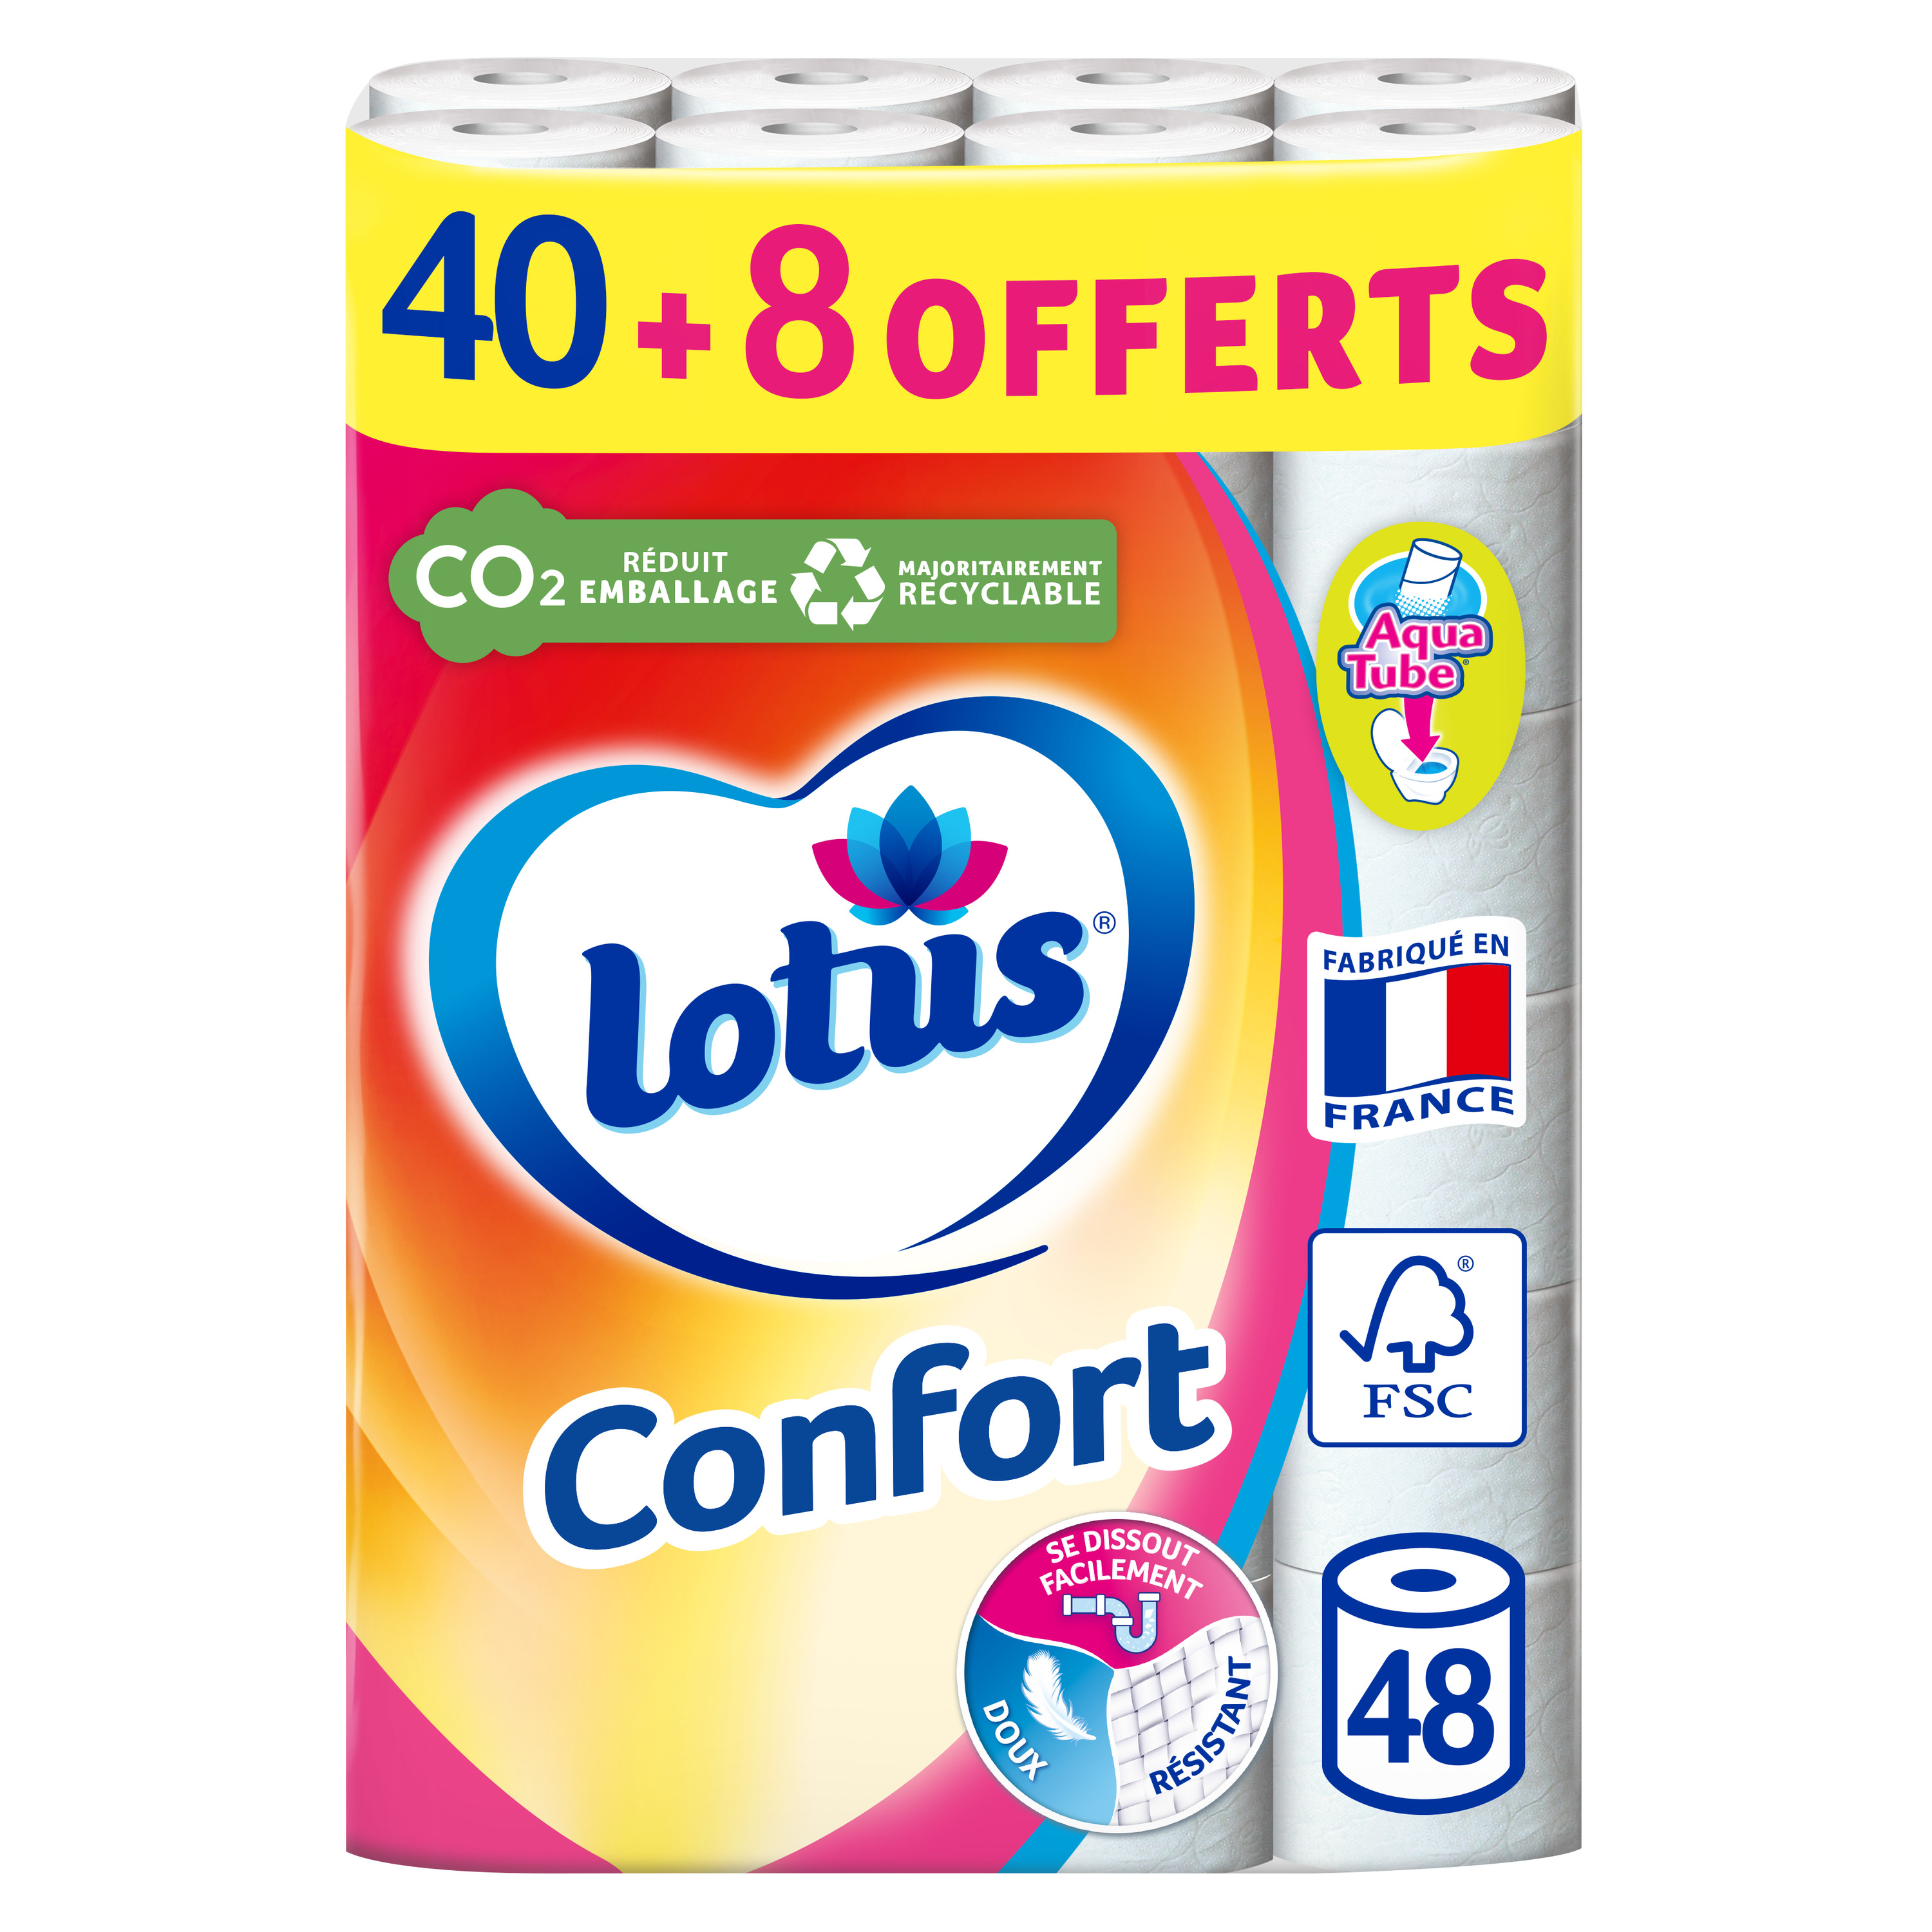 Papier toilette confort blanc à l'extrait de lotus, Lotus (x 4